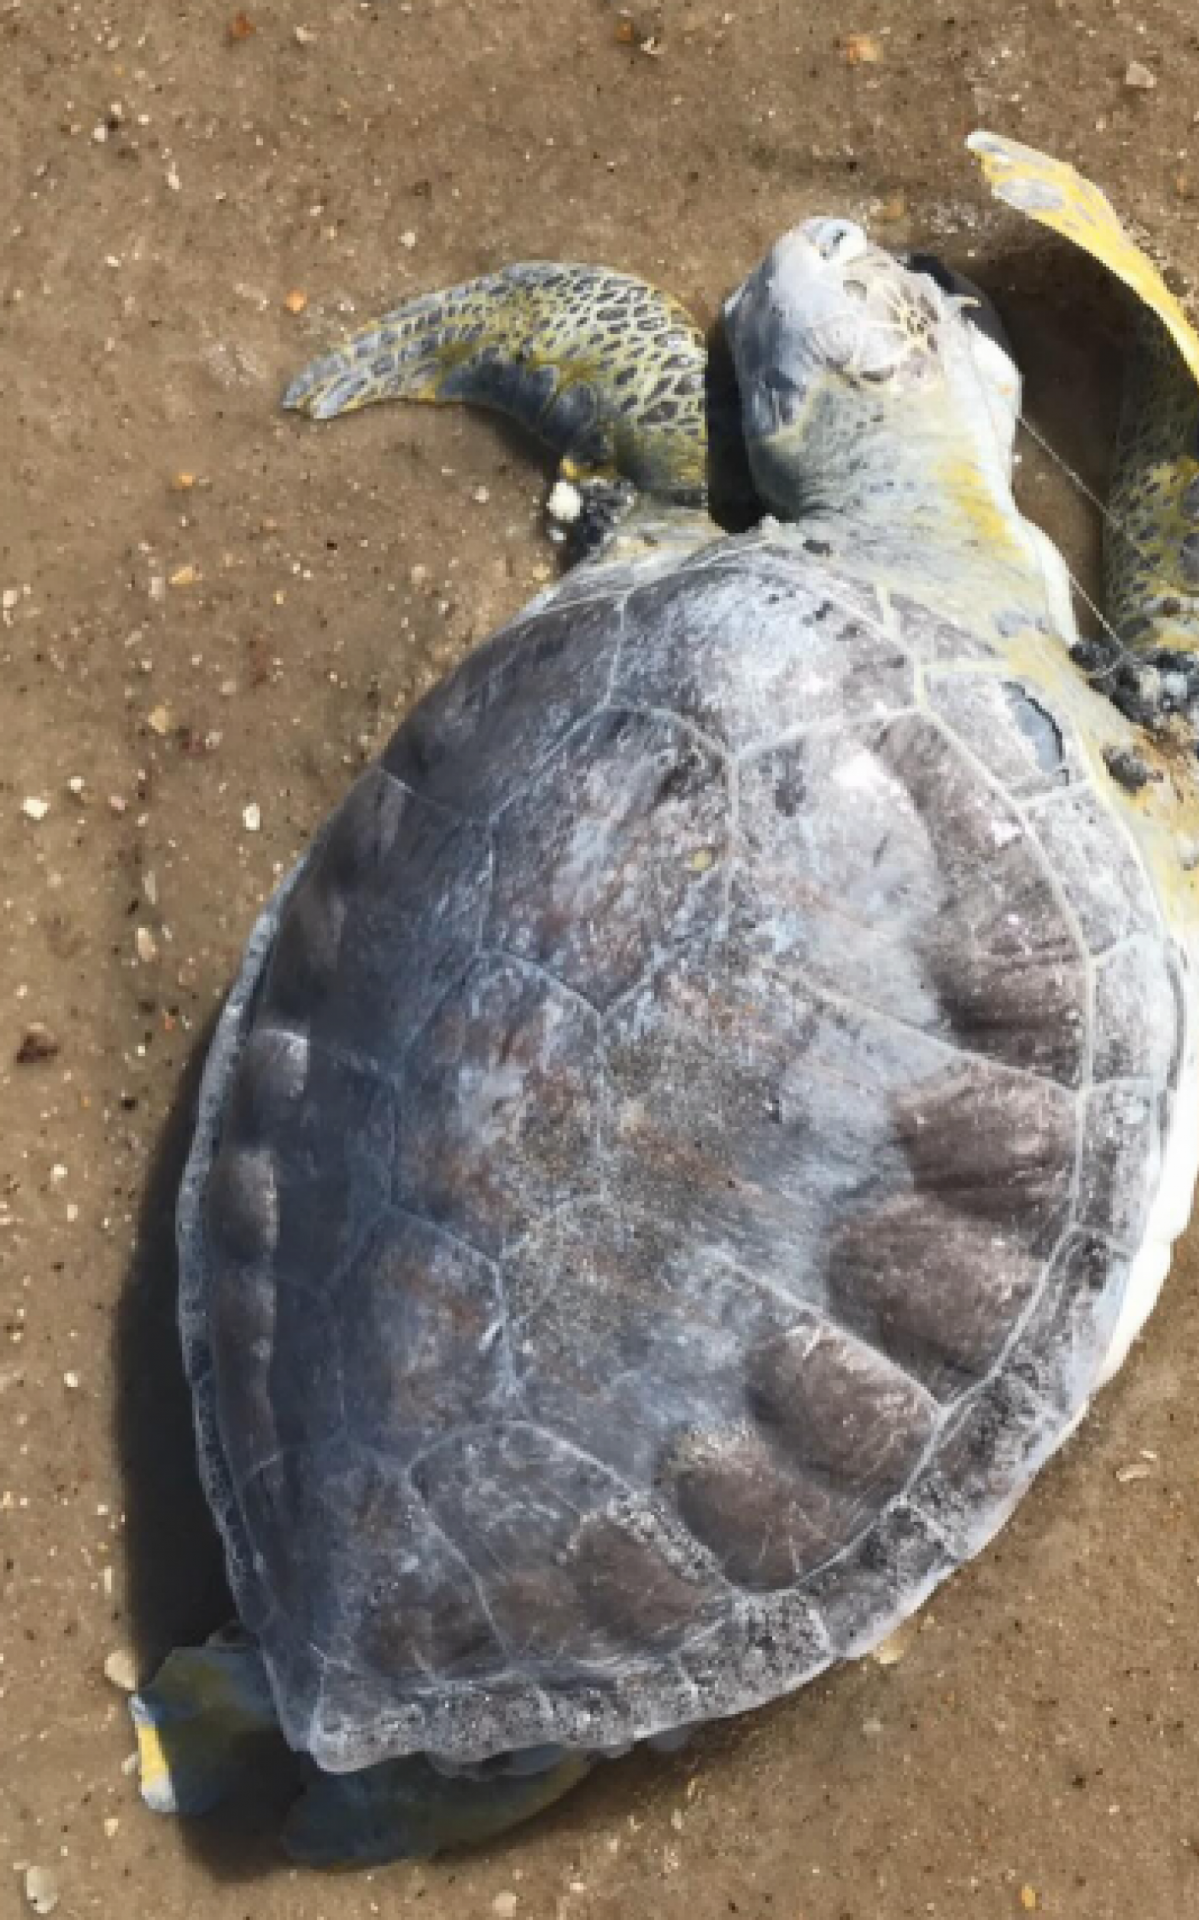 Tartaruga e pinguins são encontrados mortos nas orlas das praias de Saquarema | Saquarema